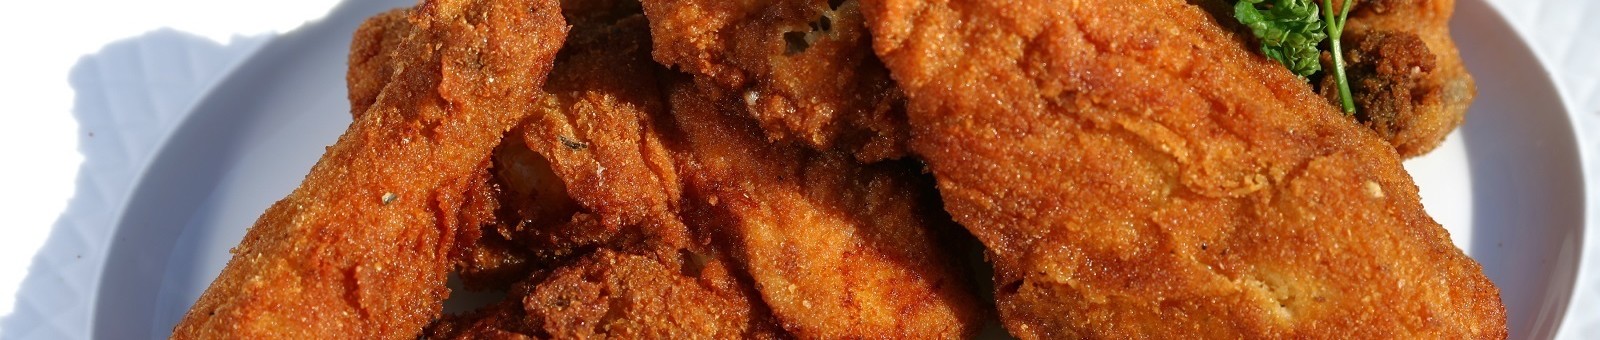     Styrian Fried Chicken 